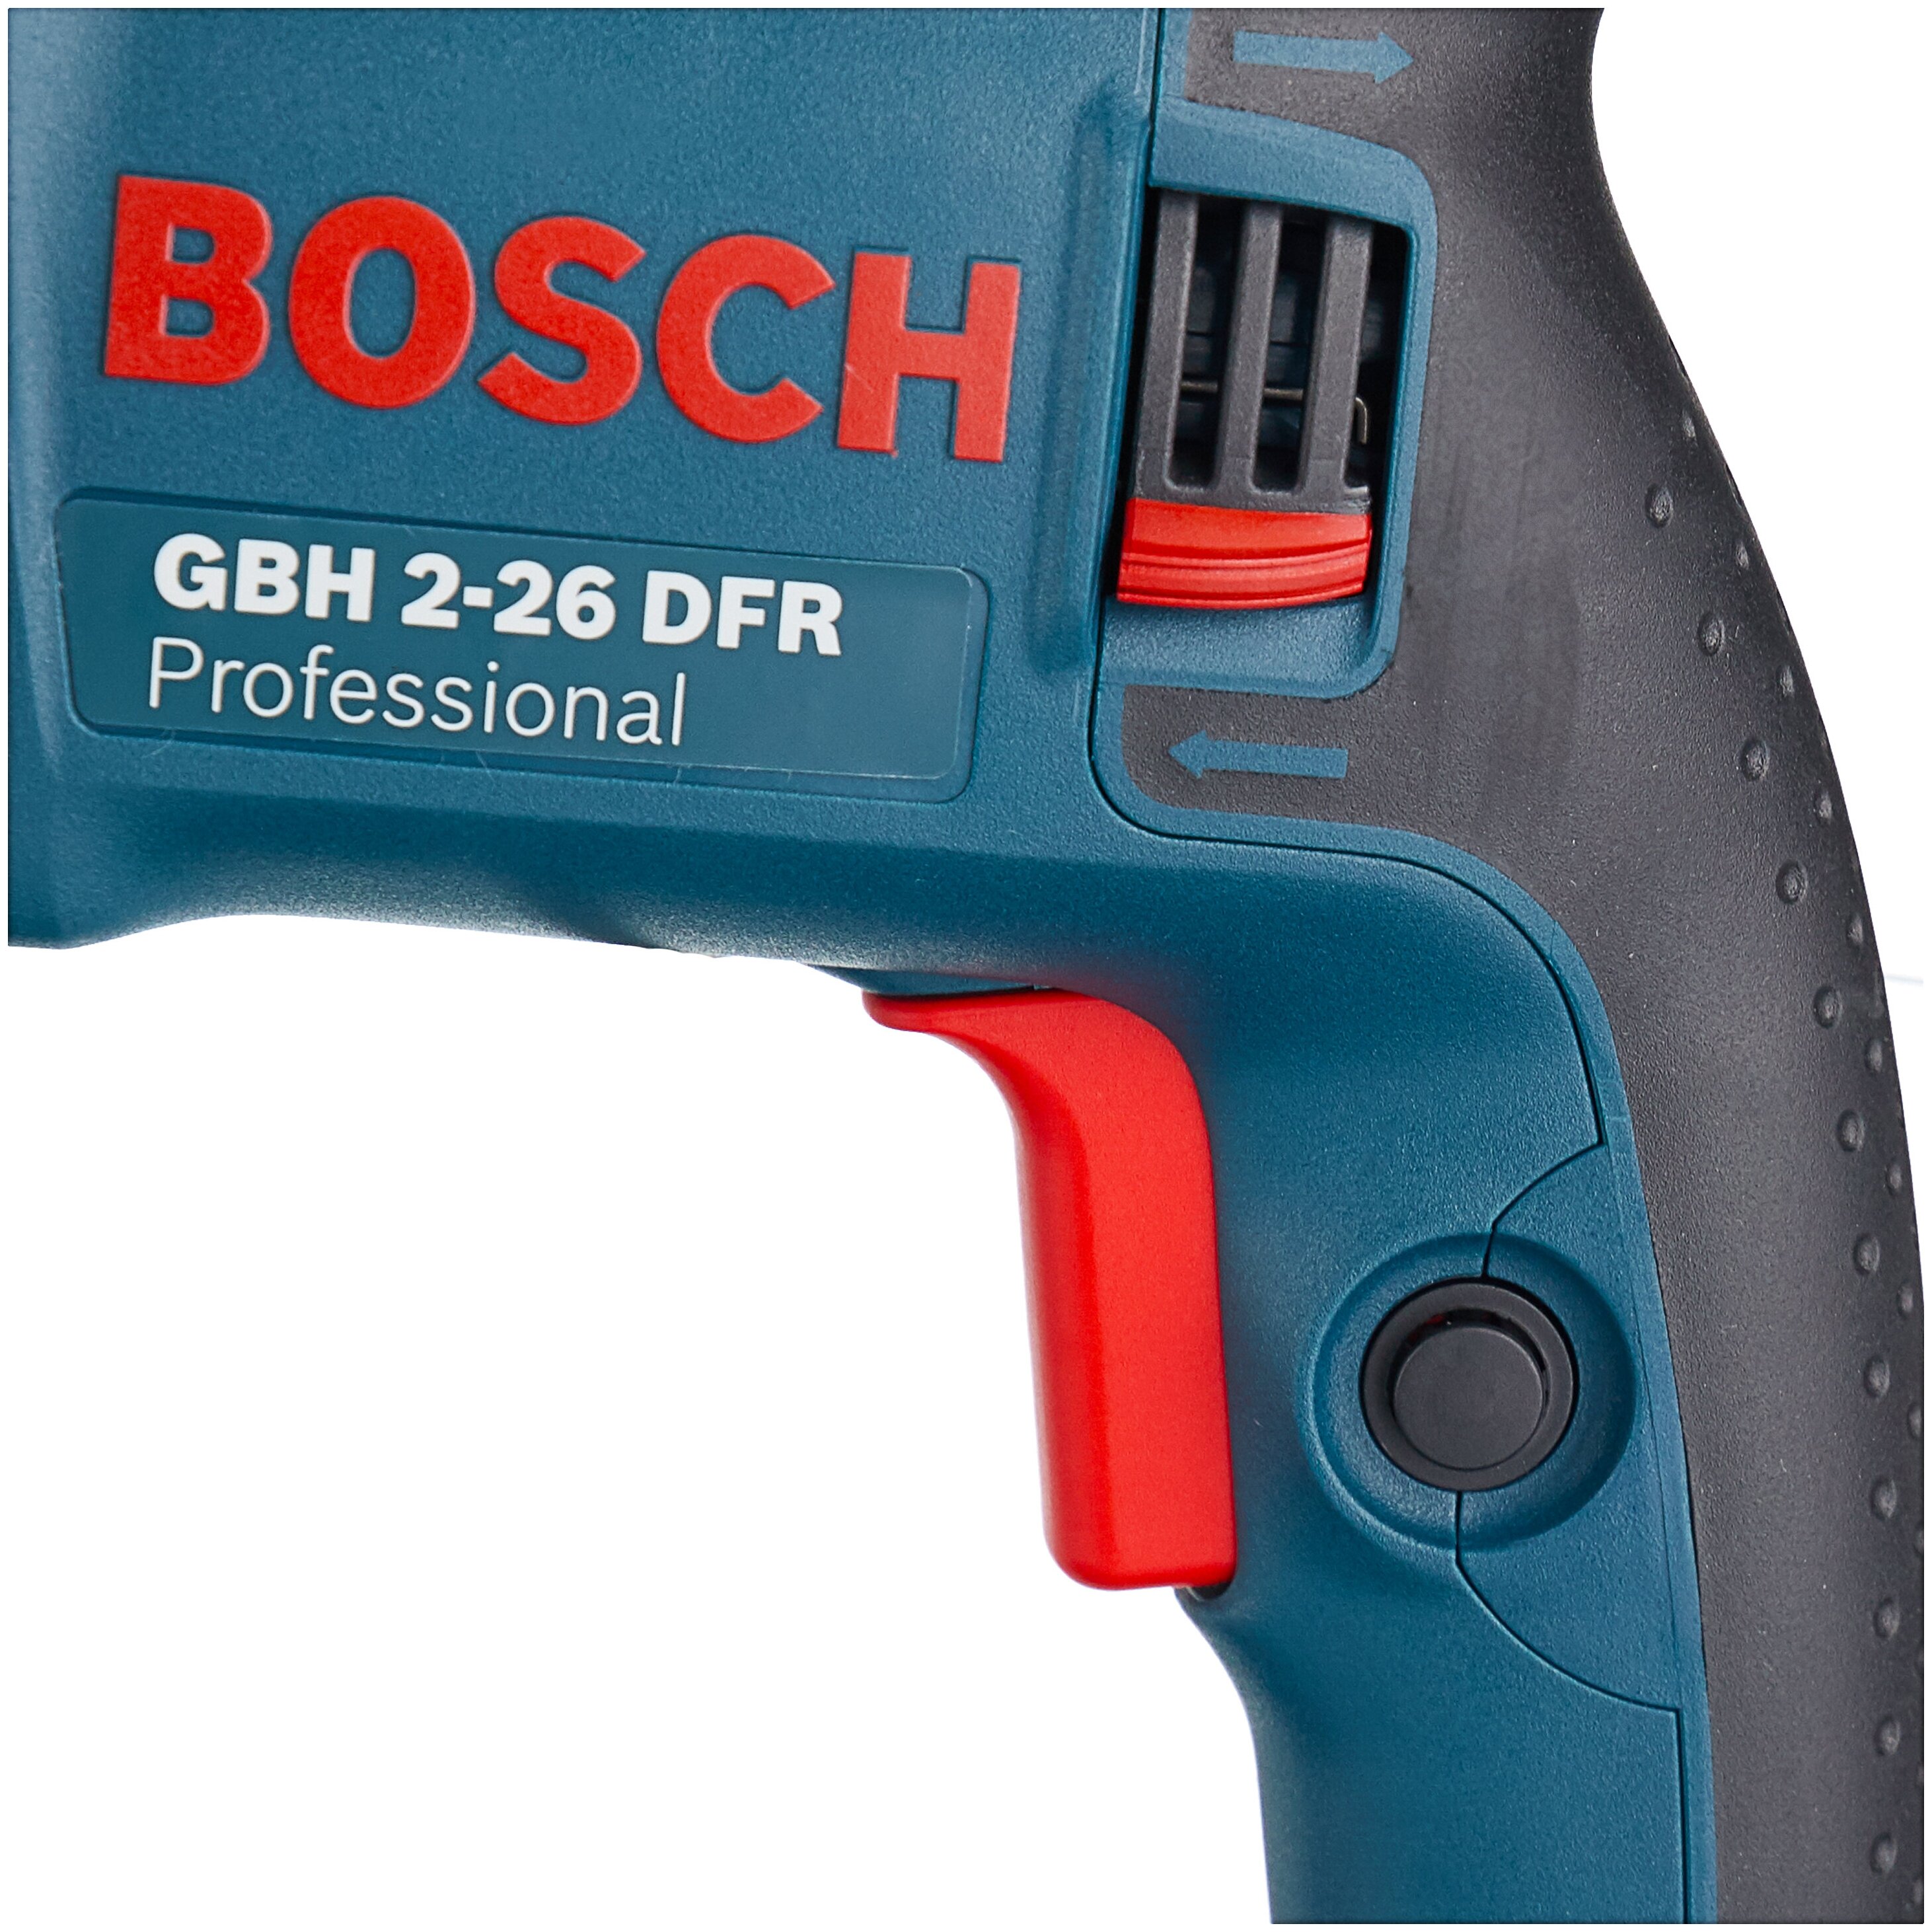 BOSCH GBH 2-26 DFR, 800 Вт - особенности конструкции: предохранительная муфта, фиксация шпинделя, блокировка кнопки включения